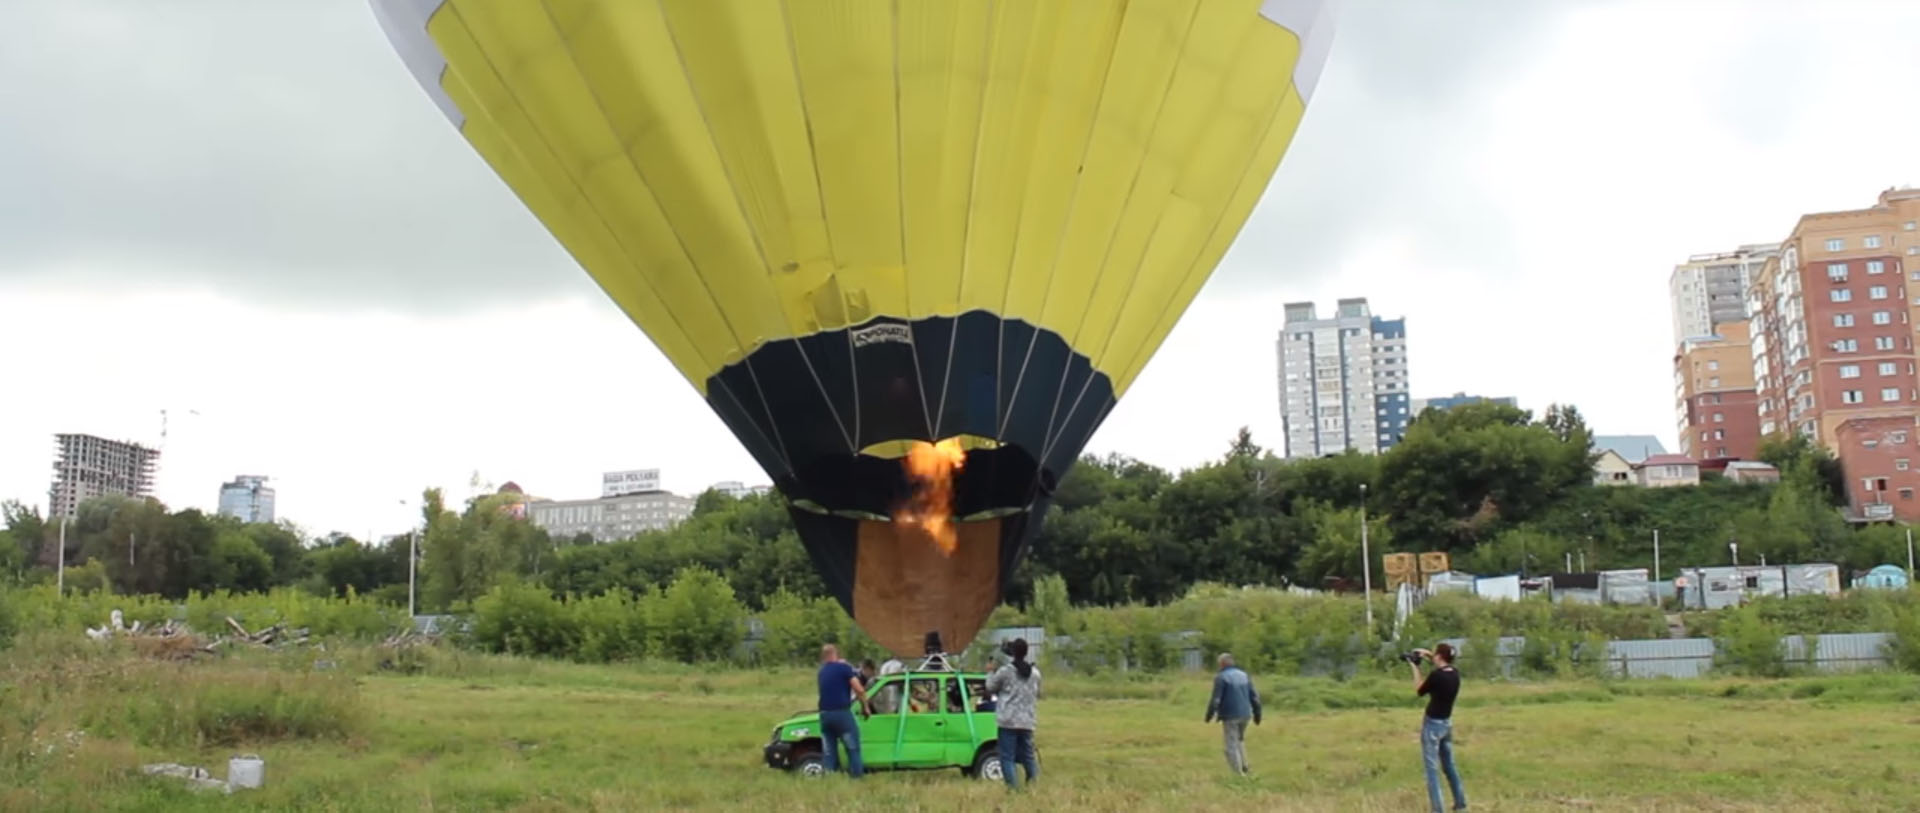 Balon mașina zburatoare 3